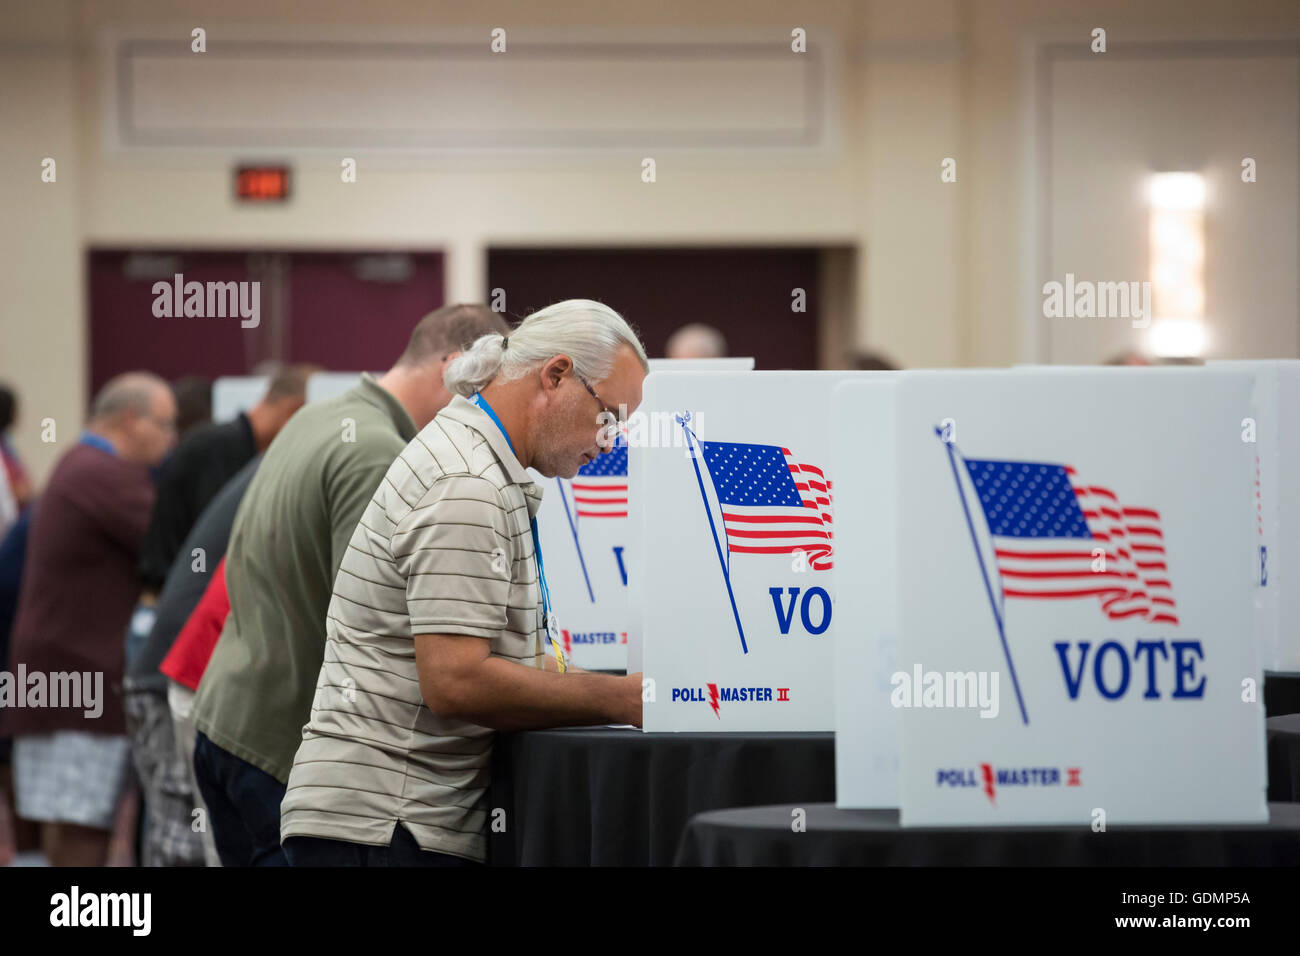 Las Vegas, Nevada - Delegierten der Teamsters Union Konvention Abstimmung Kandidaten in der Union 2016 Wahl nominieren. Stockfoto